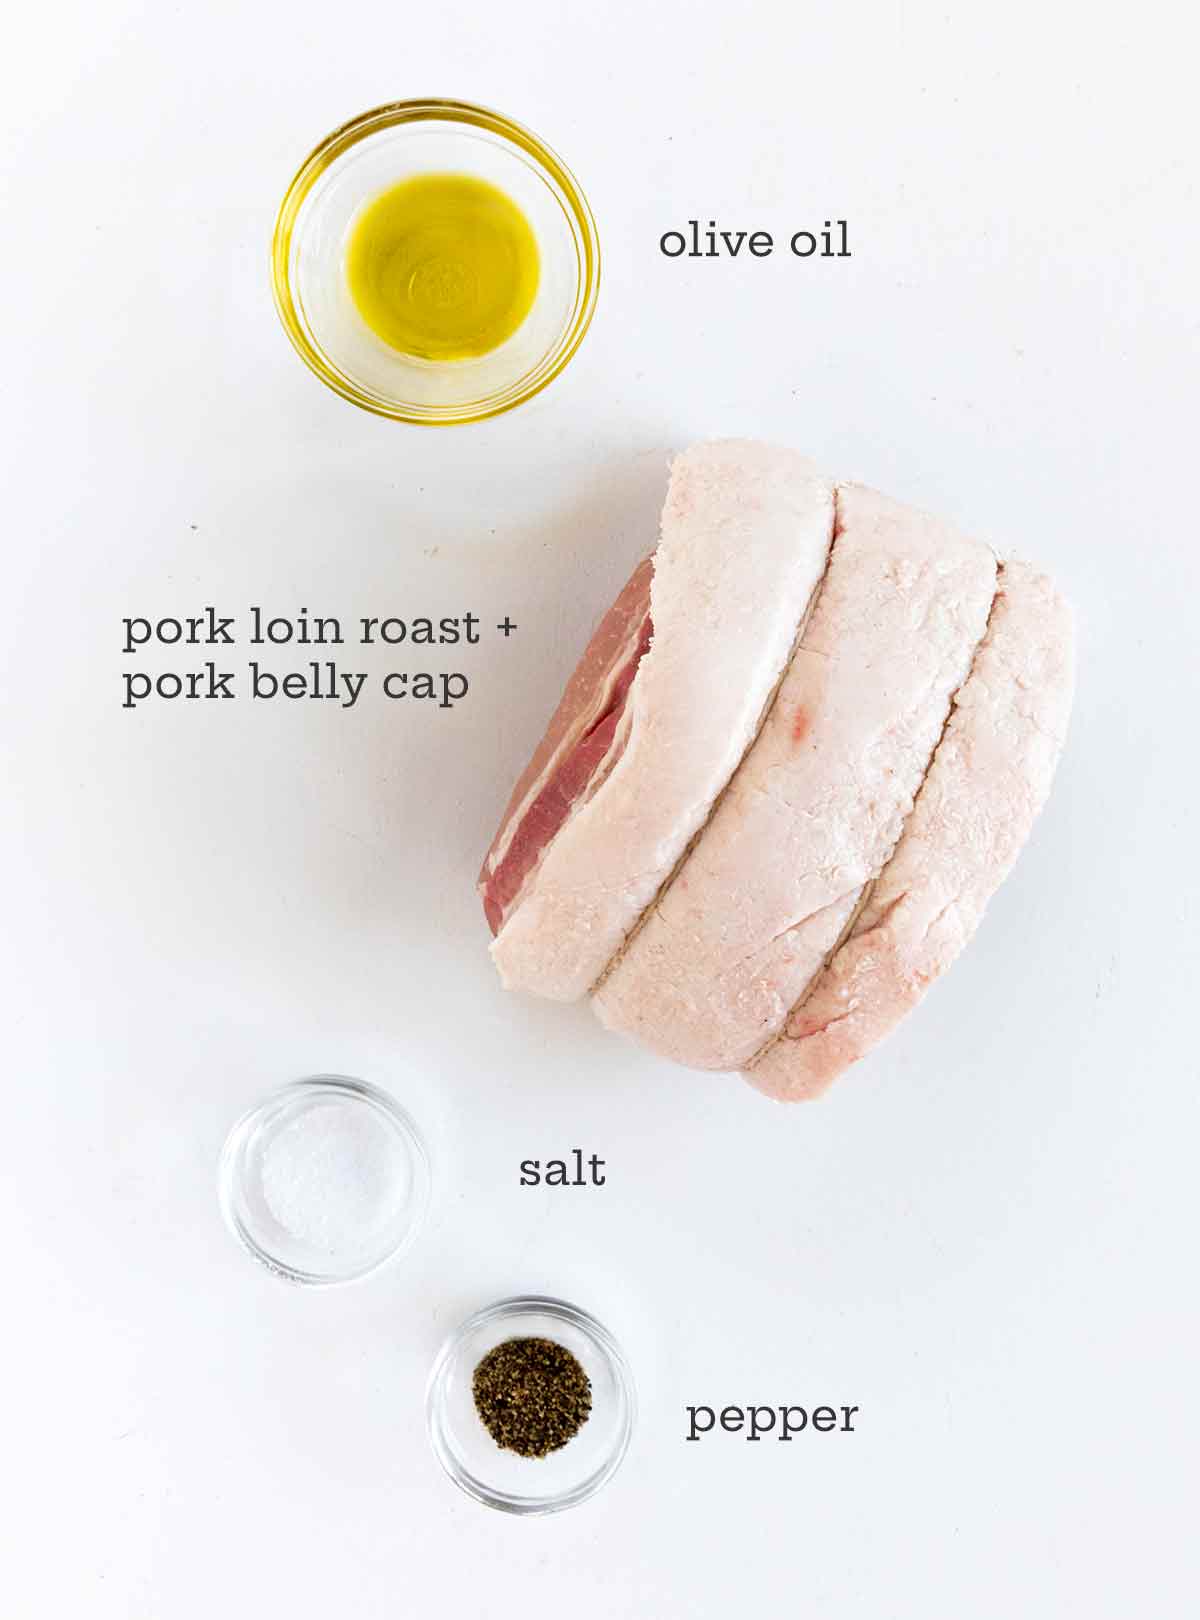 Ingredients for pork loin roast -- pork loin, olive oil, salt, and pepper.